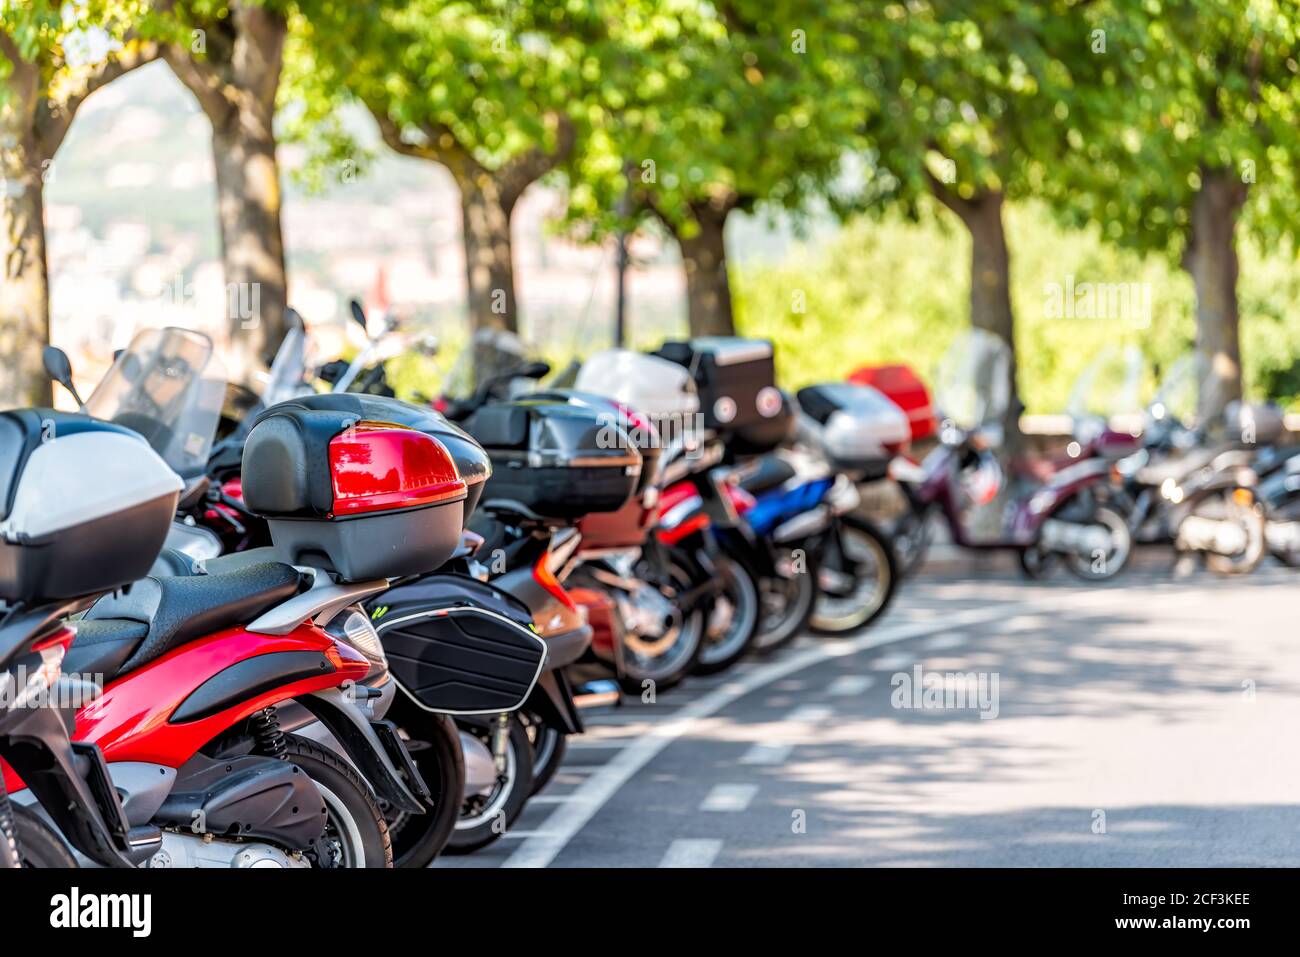 Perugia, Italien Nahaufnahme der Reihe von vielen Roller Motorrad Moped in der Stadt Straße Parkplatz mit niemand während des Sommers geparkt Stockfoto